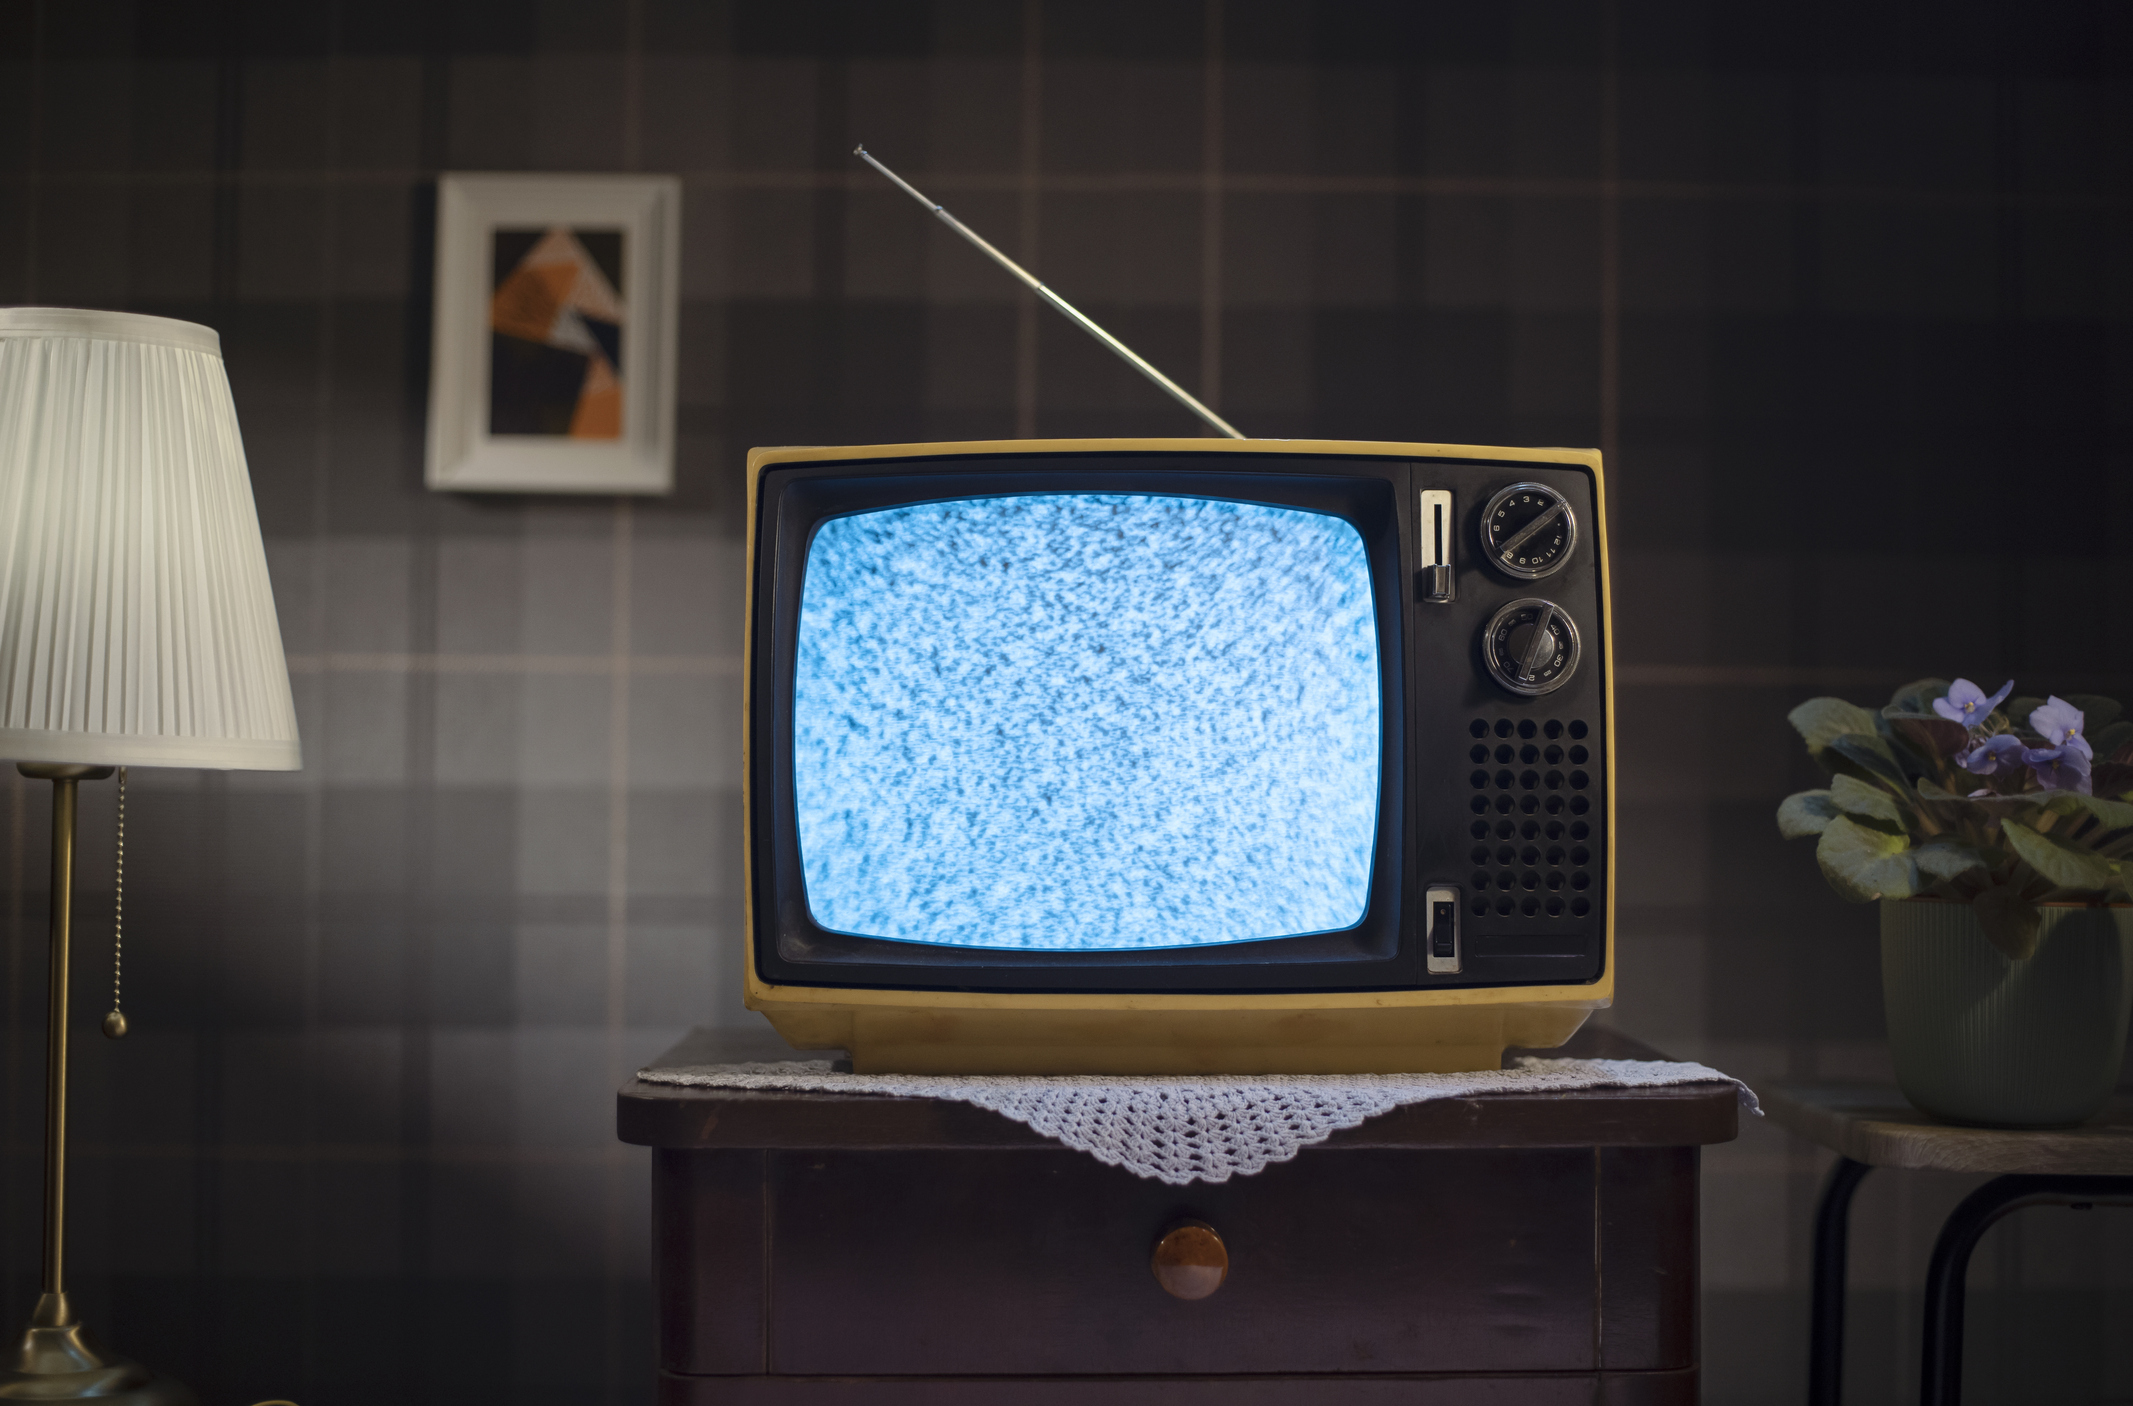 Noticia: ¿Cómo convertir su viejo tv en un Smart tv?